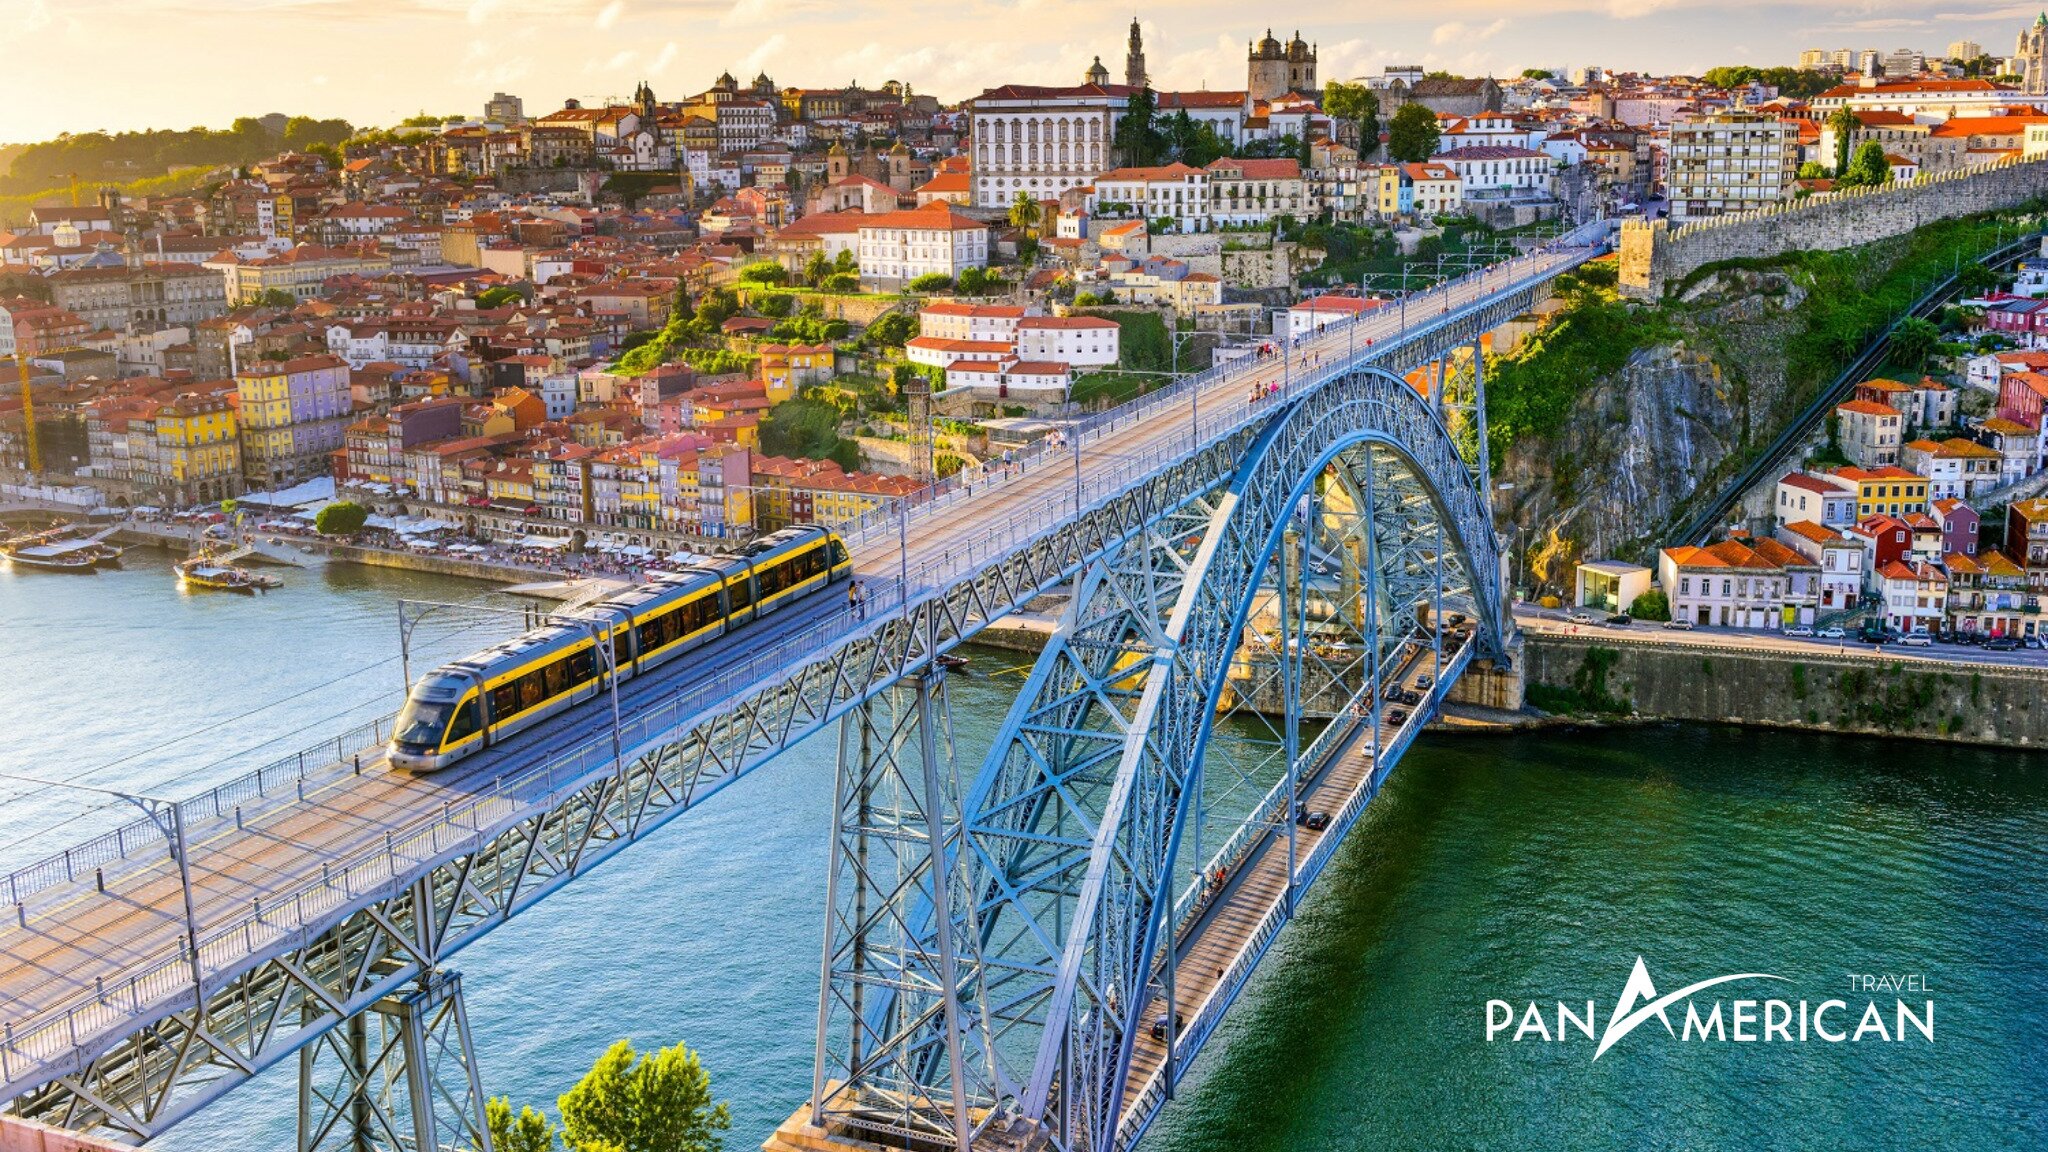 Cơ sở hạ tầng tiên tiến ở thành phố Porto